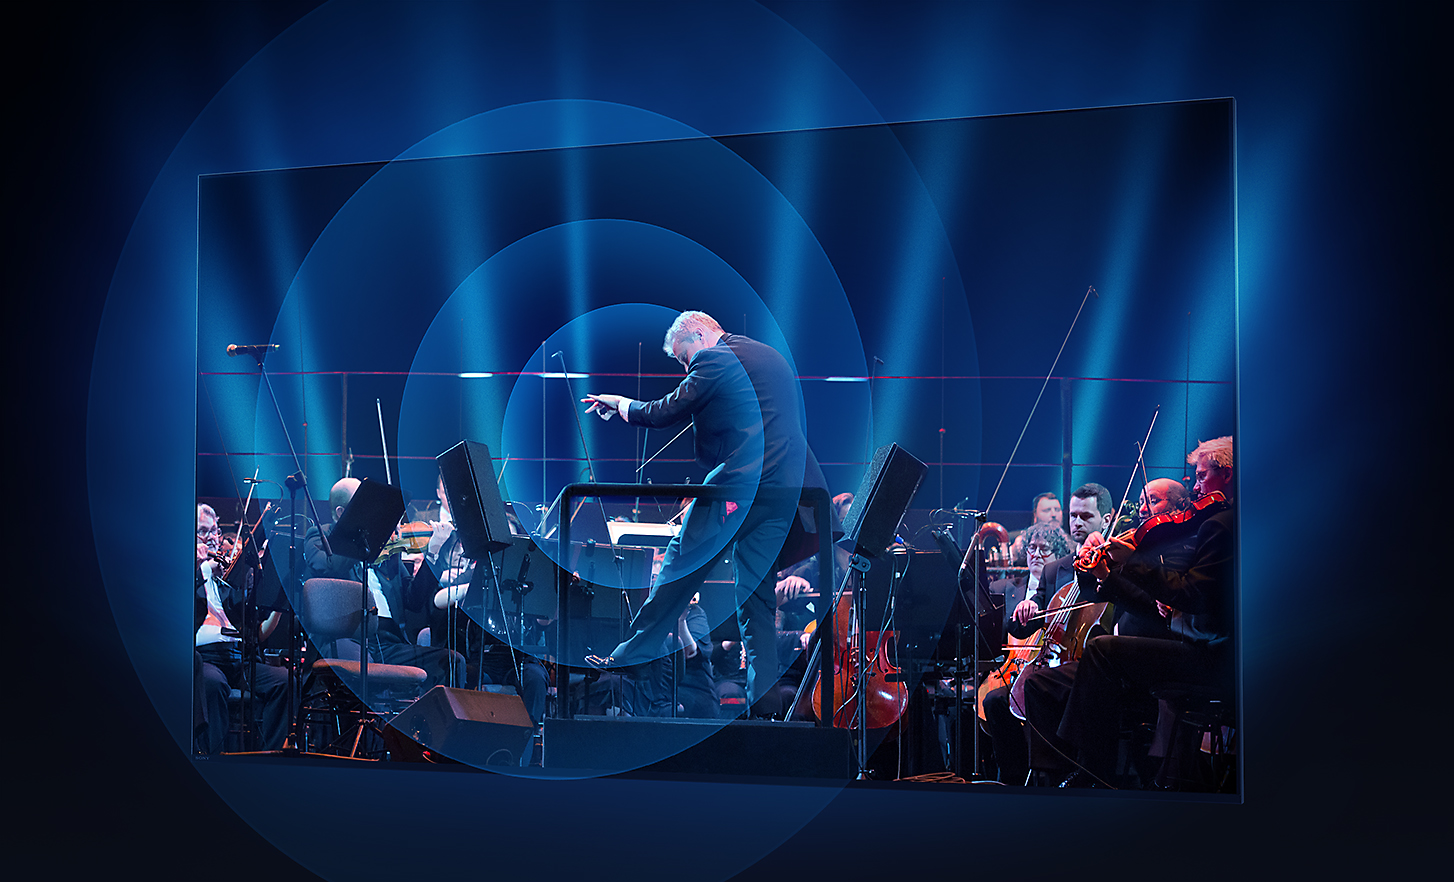 BRAVIA Fernsehbildschirm mit Orchester und Dirigent, Klangwellen strahlen in konzentrischen Kreisen von der Bildschirmmitte aus